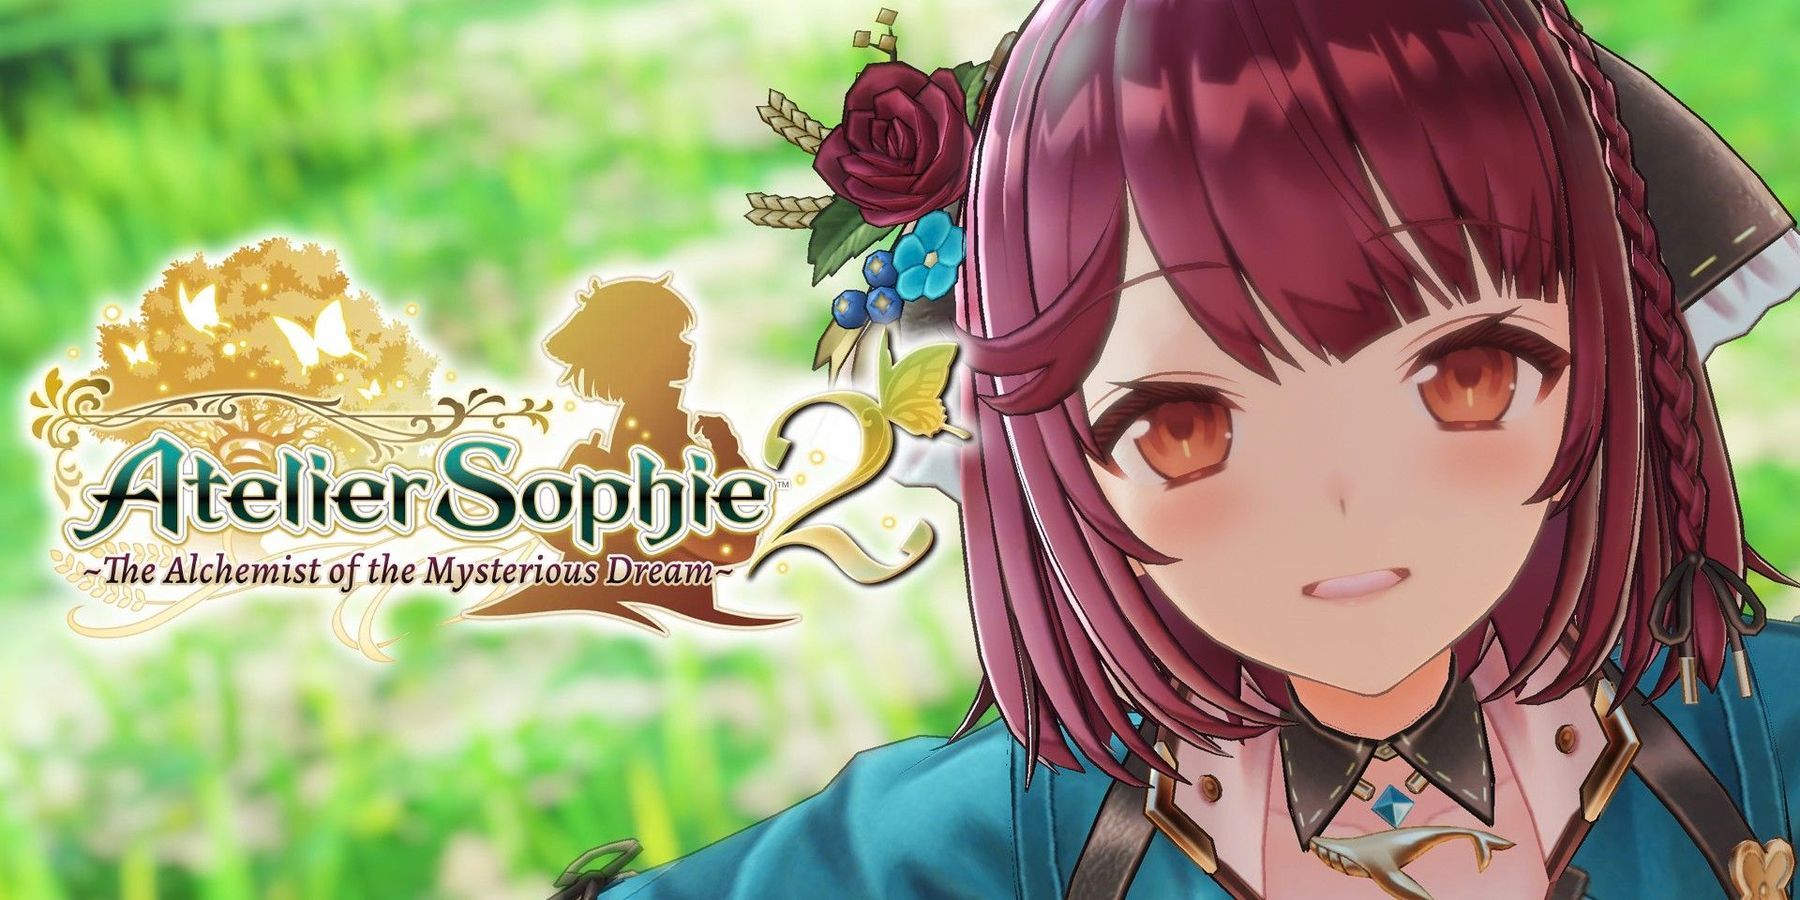 Atelier Sophie 2 officieel aangekondigd door Koei Tecmo met release in februari 2022